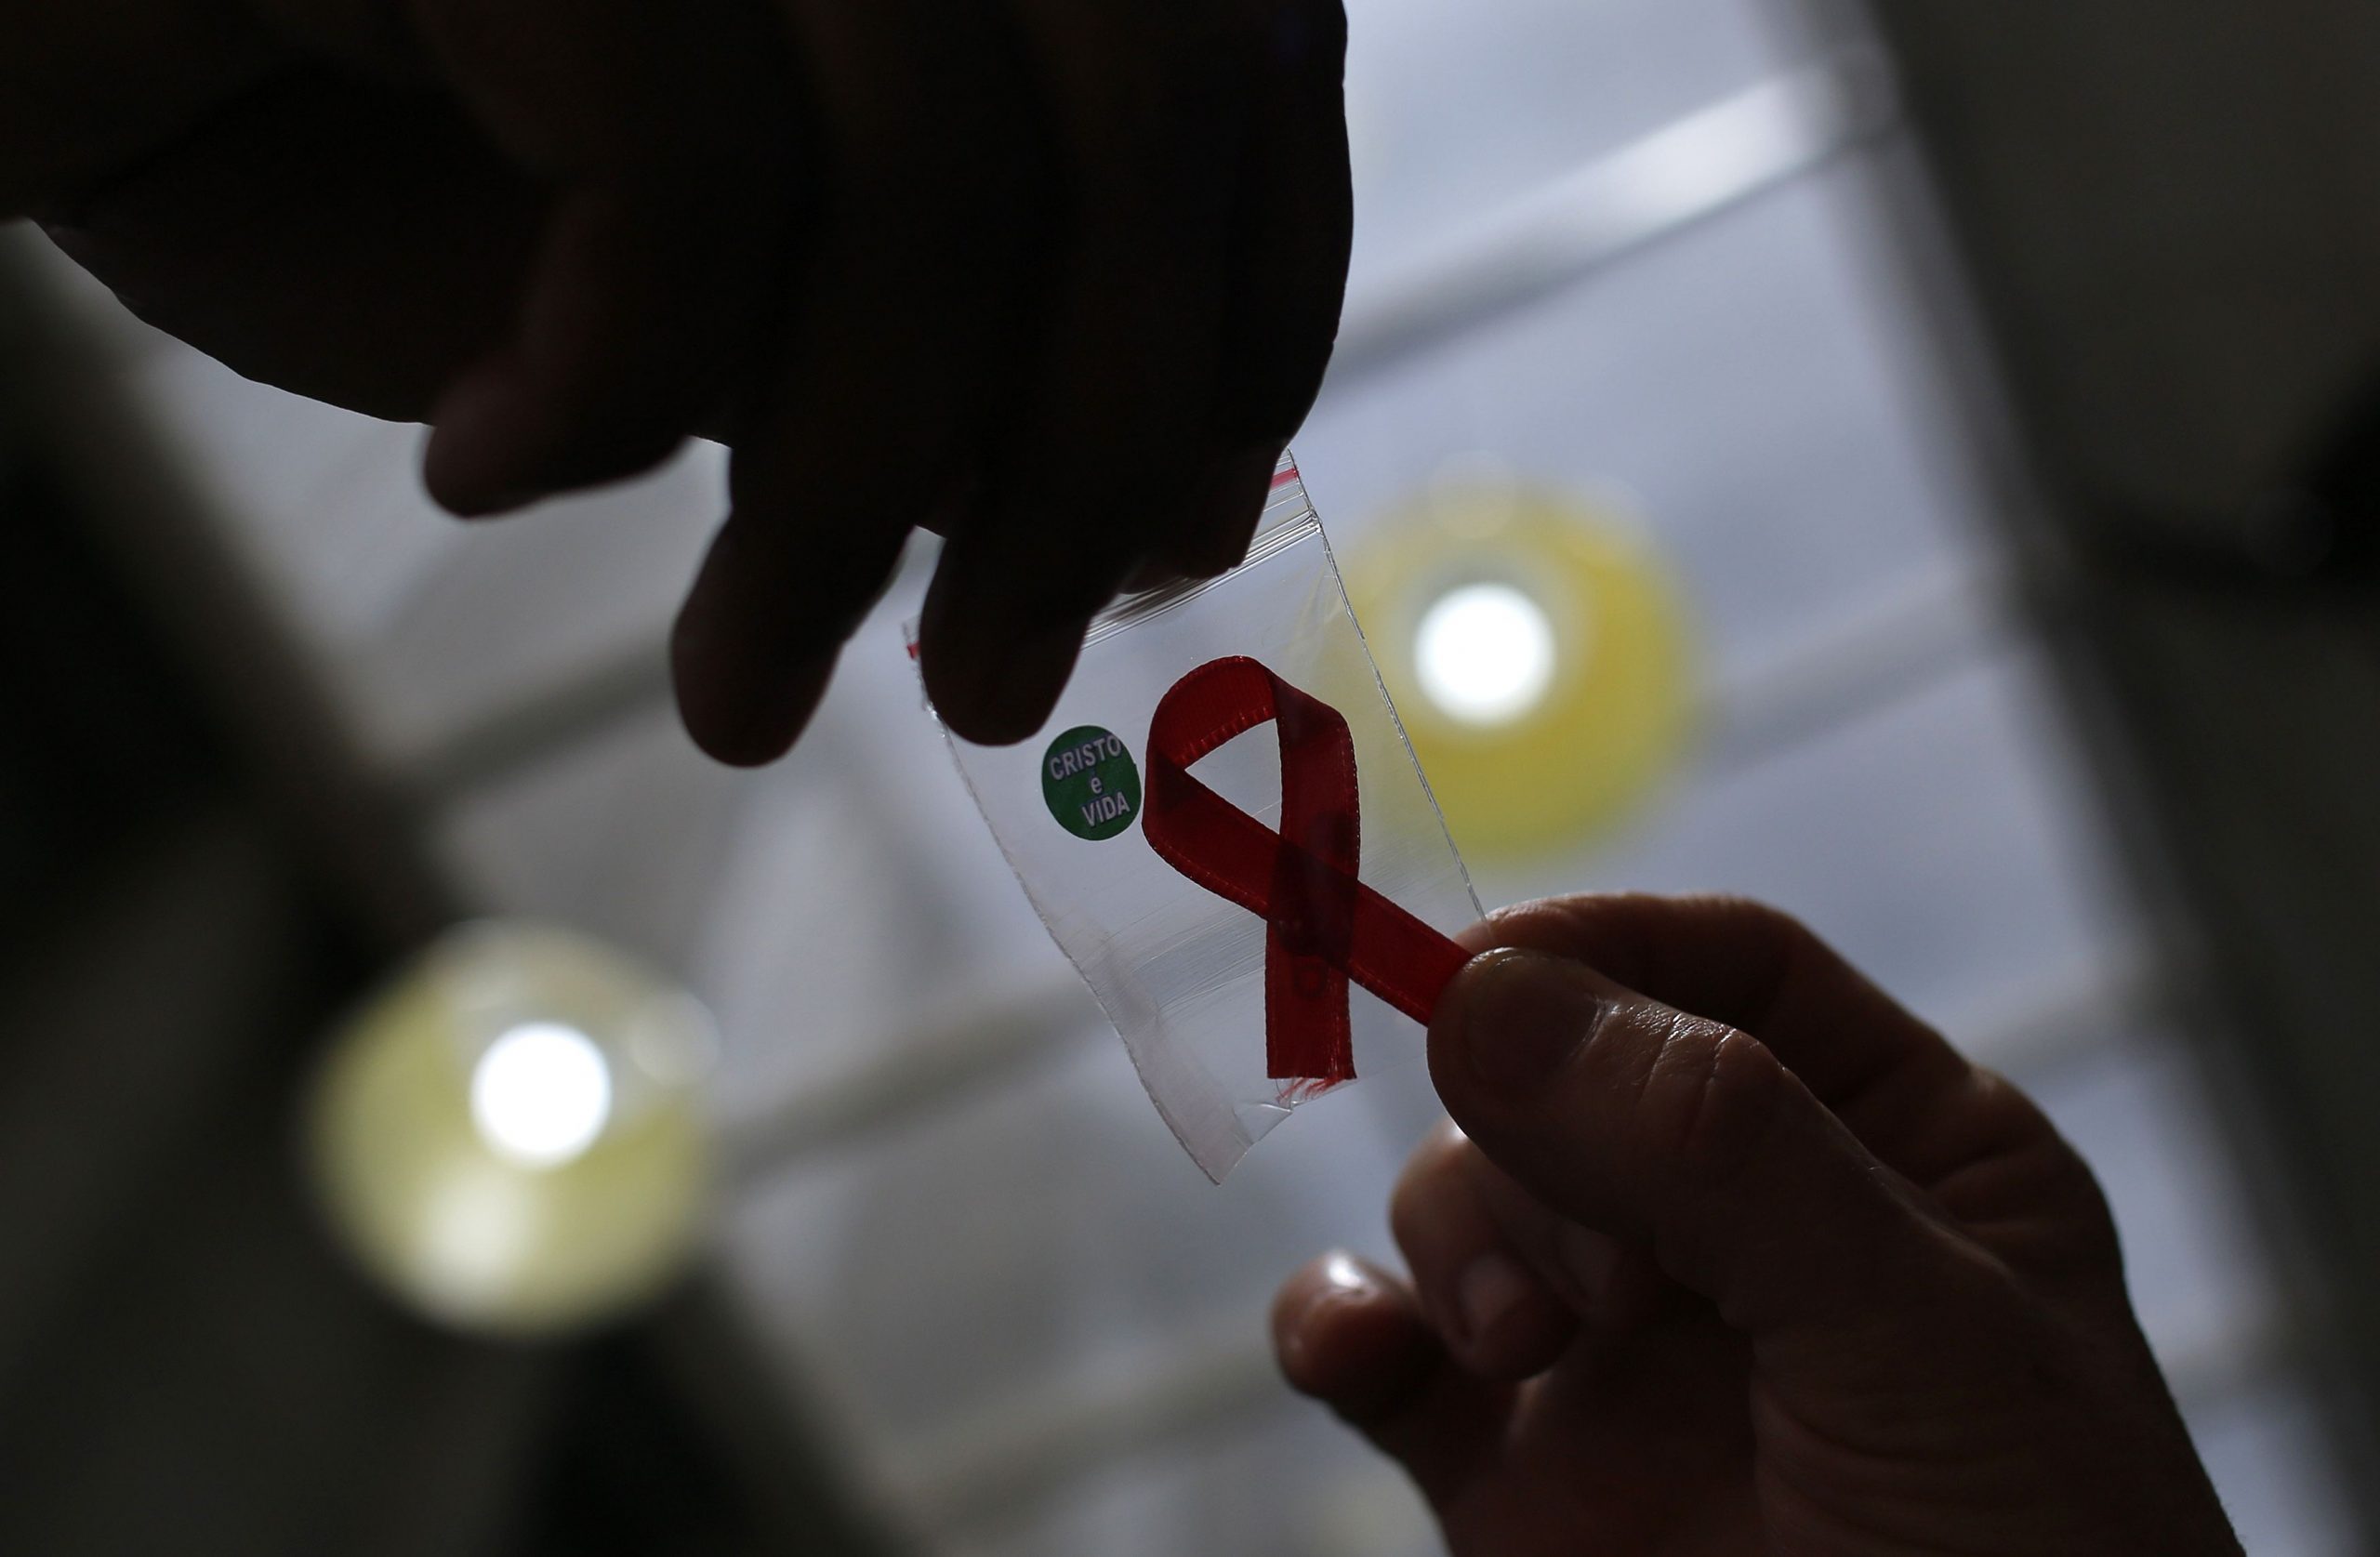 AIDS: Η πρώτη γυναίκα που θεραπεύτηκε από τον HIV